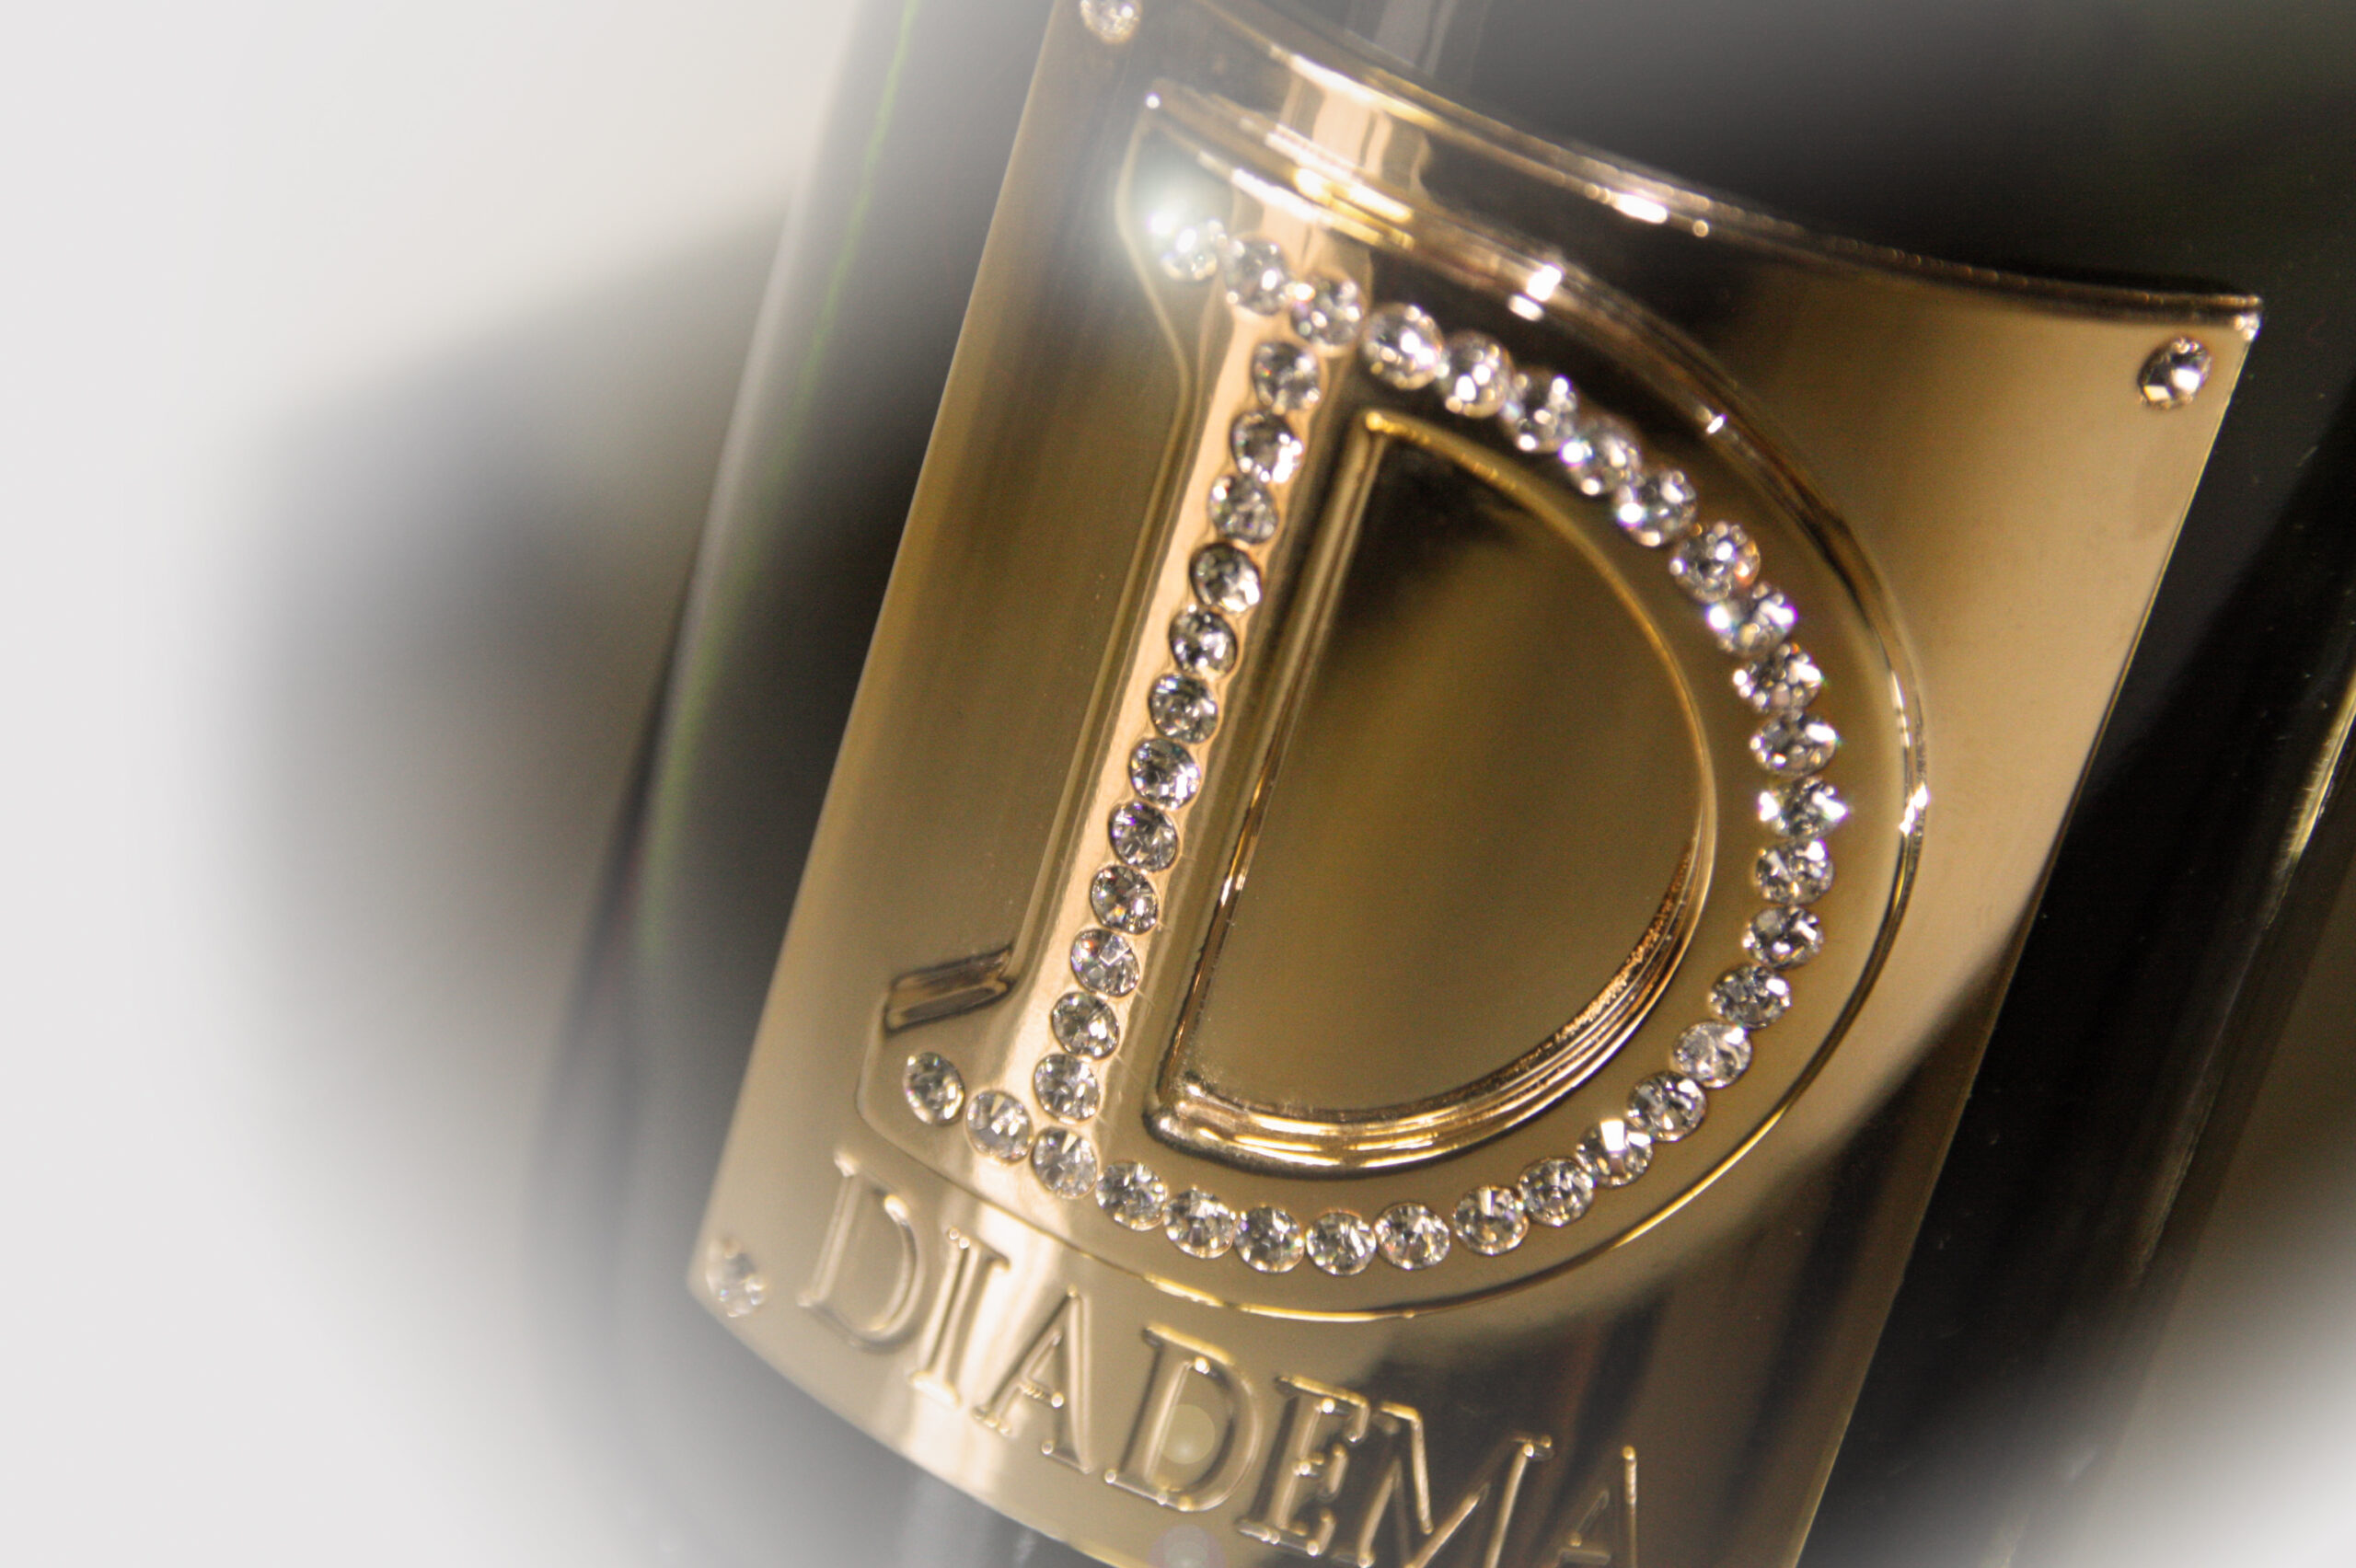 【正規品】ディアデマ ドサージュ ゼロ NV 3本セット 750ml×3 | ワイン シャンパン ショップ お酒市場